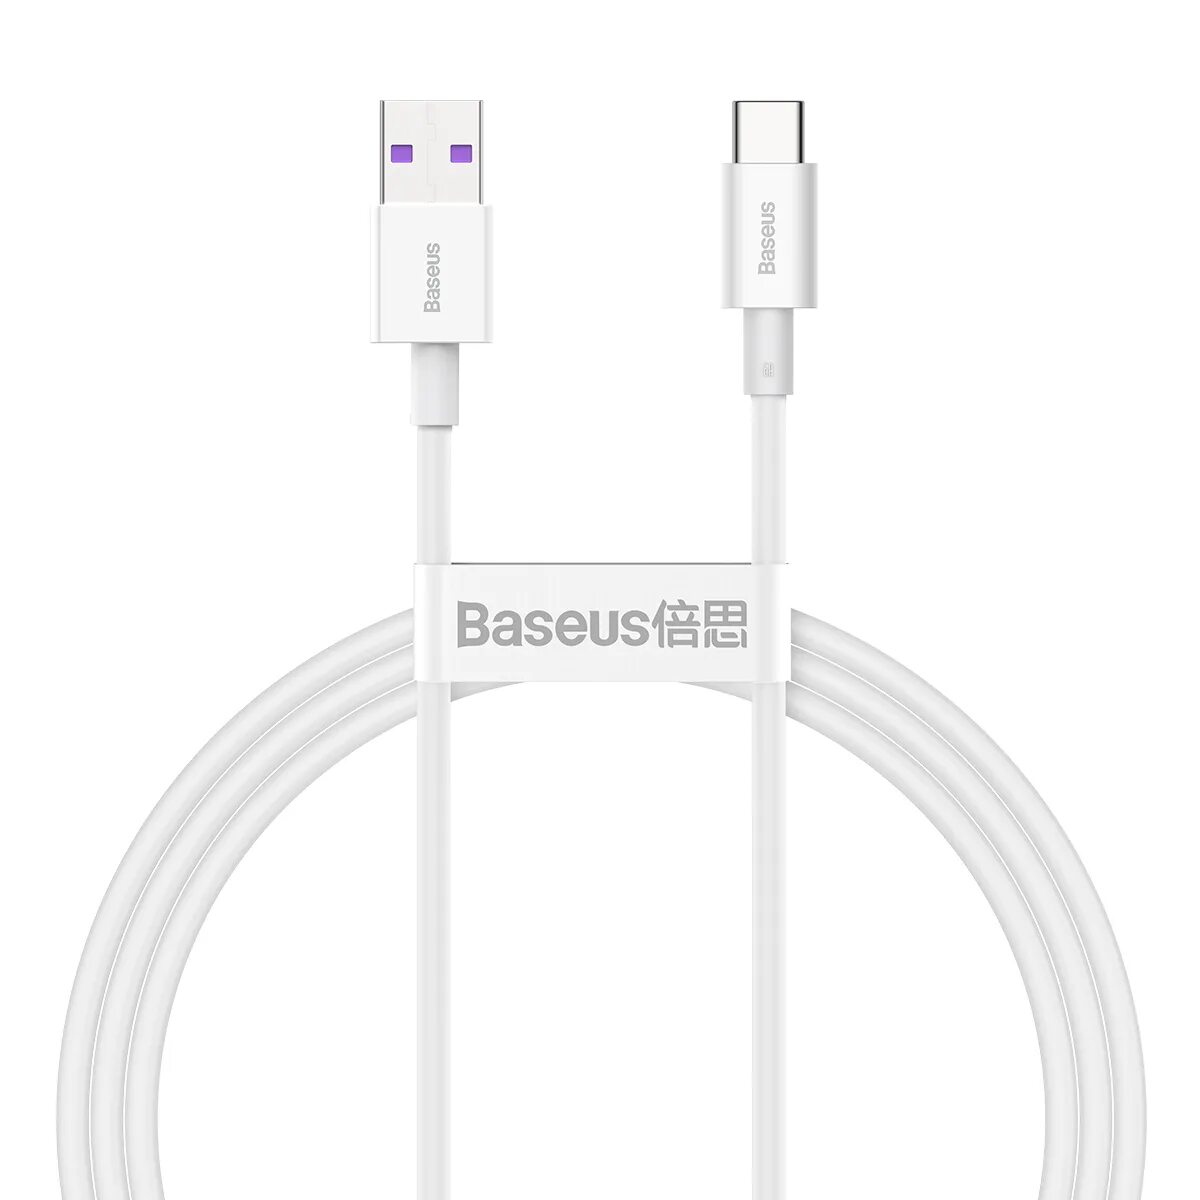 Кабель Apple USB - Lightning (md819zm/a) 2 м. Кабель Apple USB Type-c/Lightning (1 м). Кабель Apple USB - Lightning mxly2zm/a (1 метр). Кабель Apple mxly2zm/a, Lightning (m) - USB (M), 1м, MFI, белый.